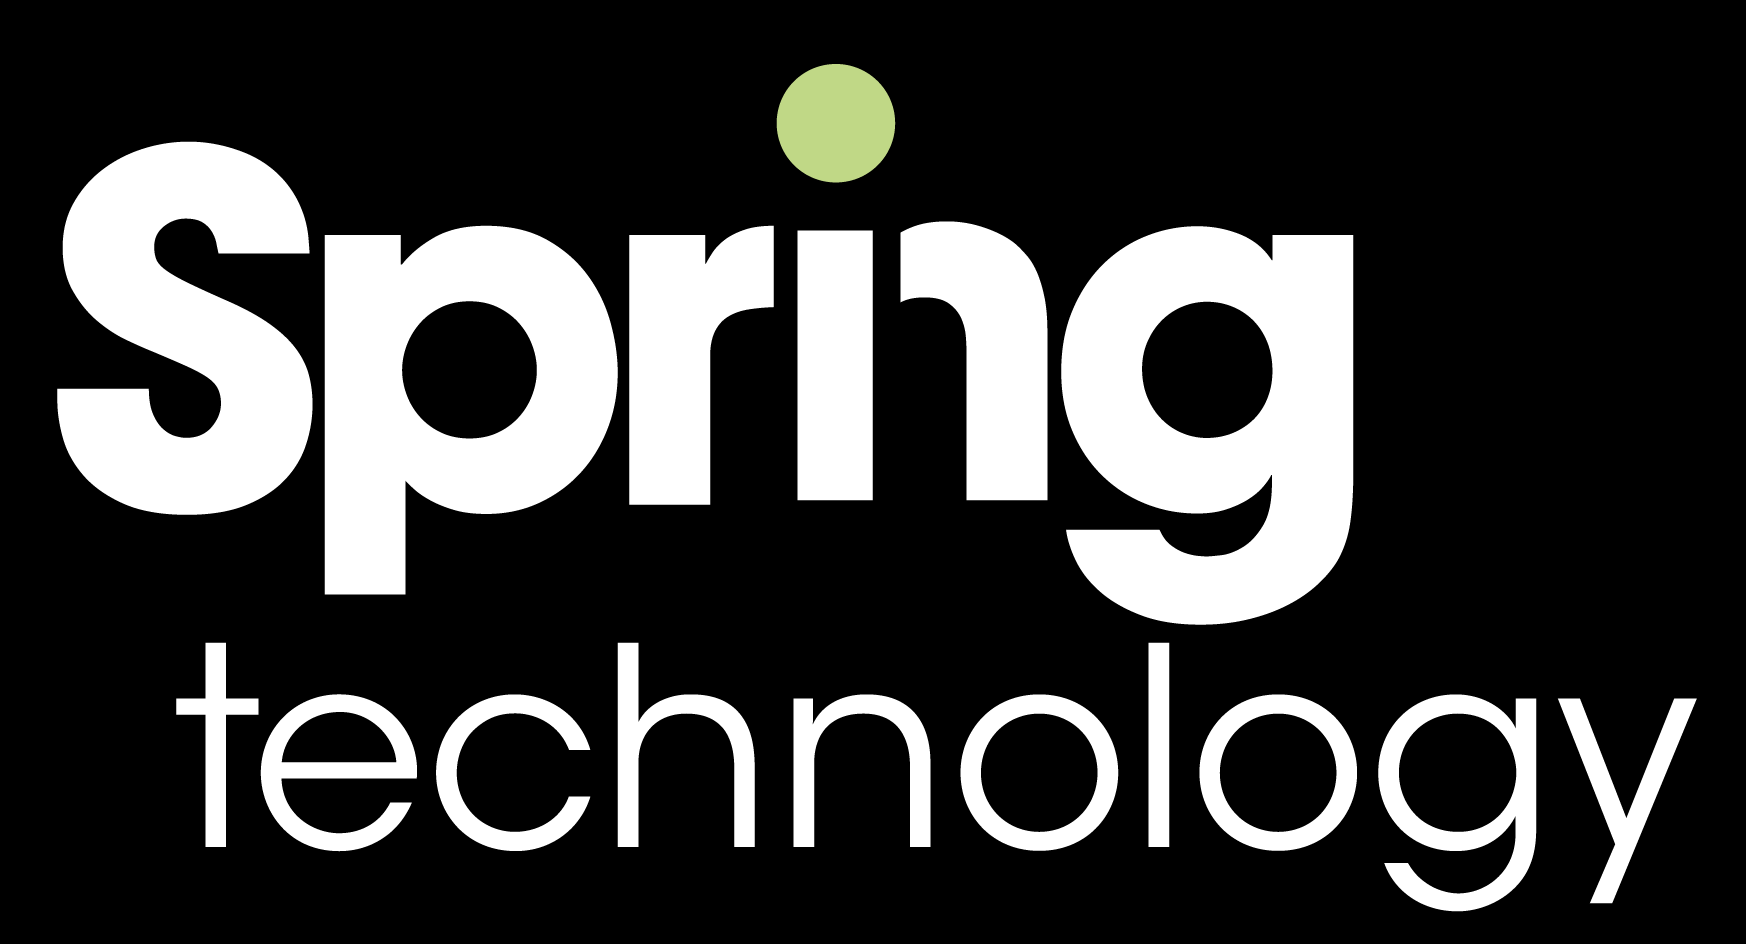 Spring Services | Spring logo